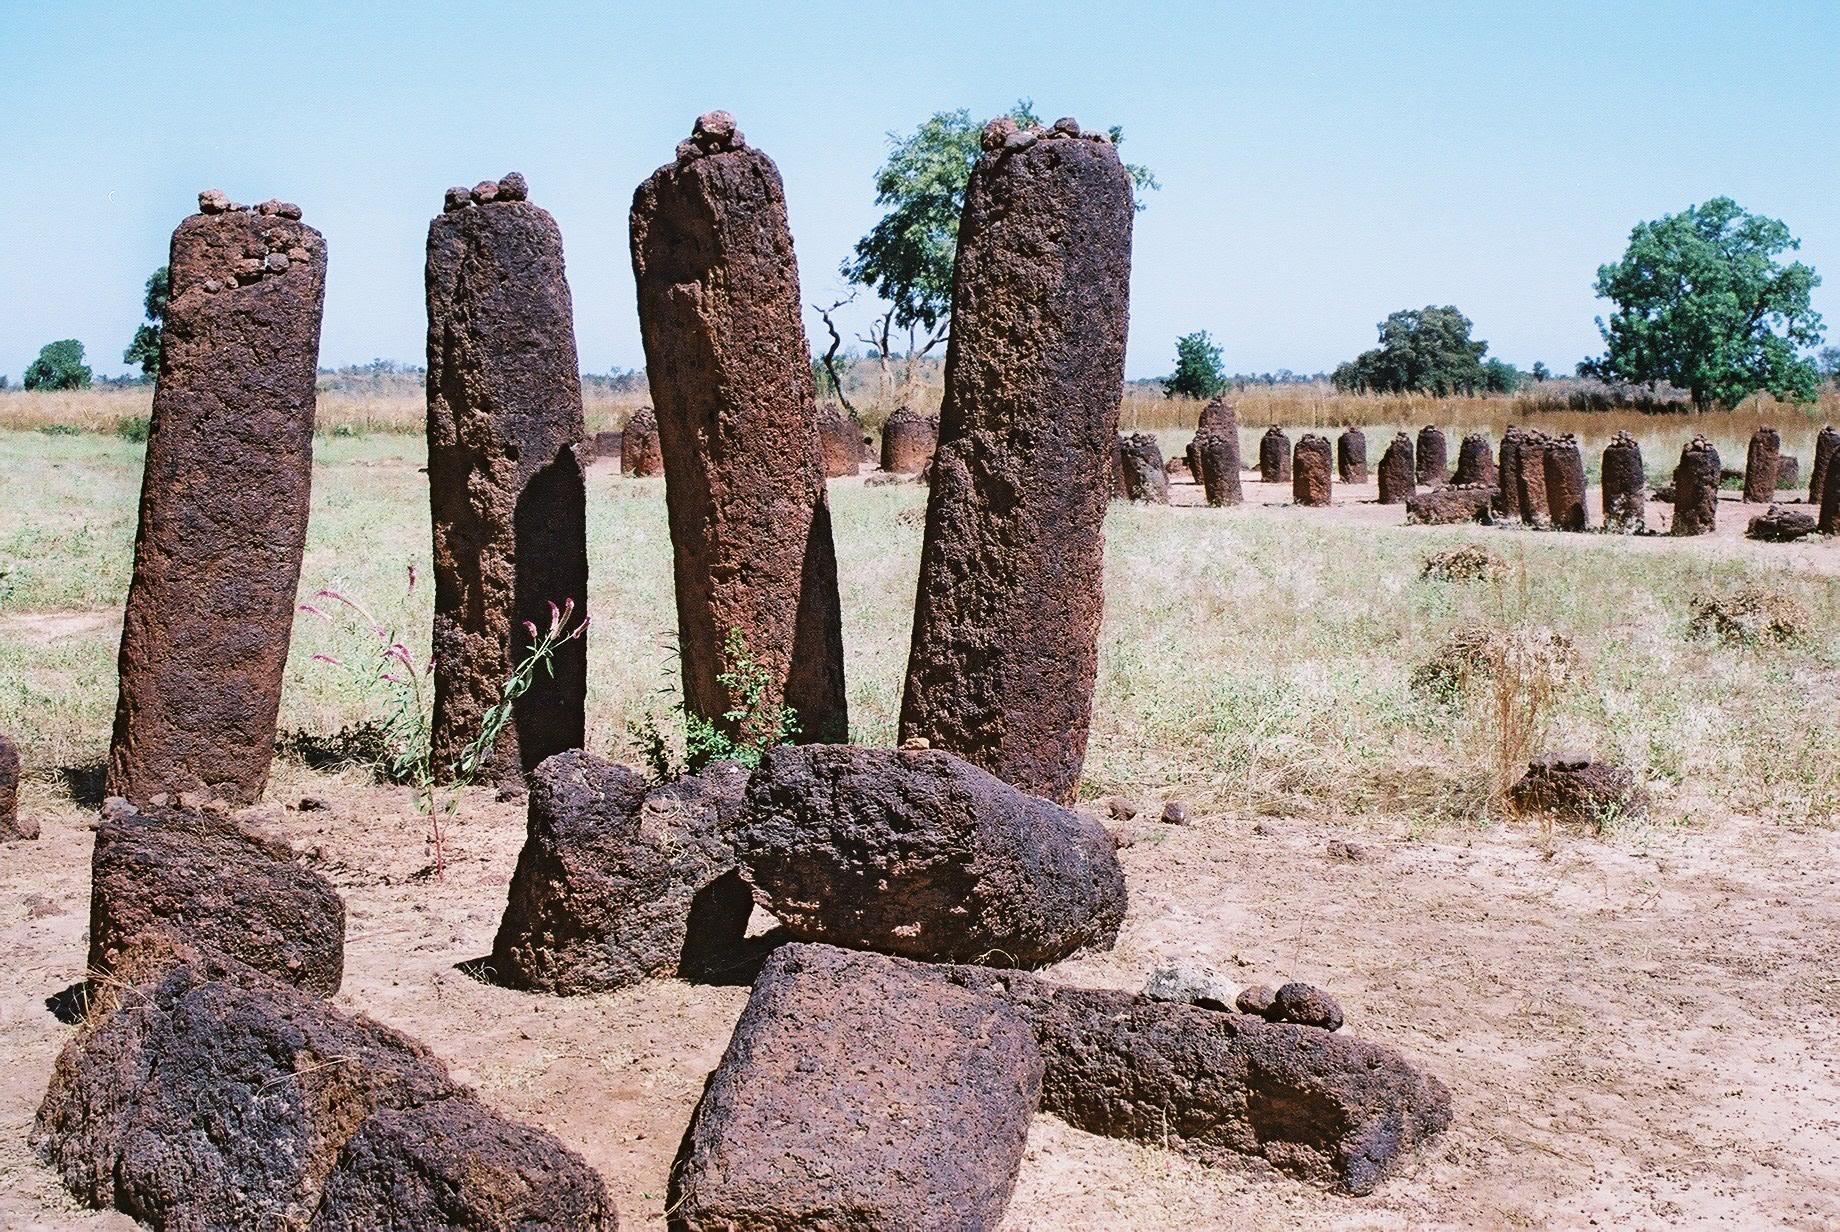 塞内甘比亚石圈 Stone Circles of Senegambia